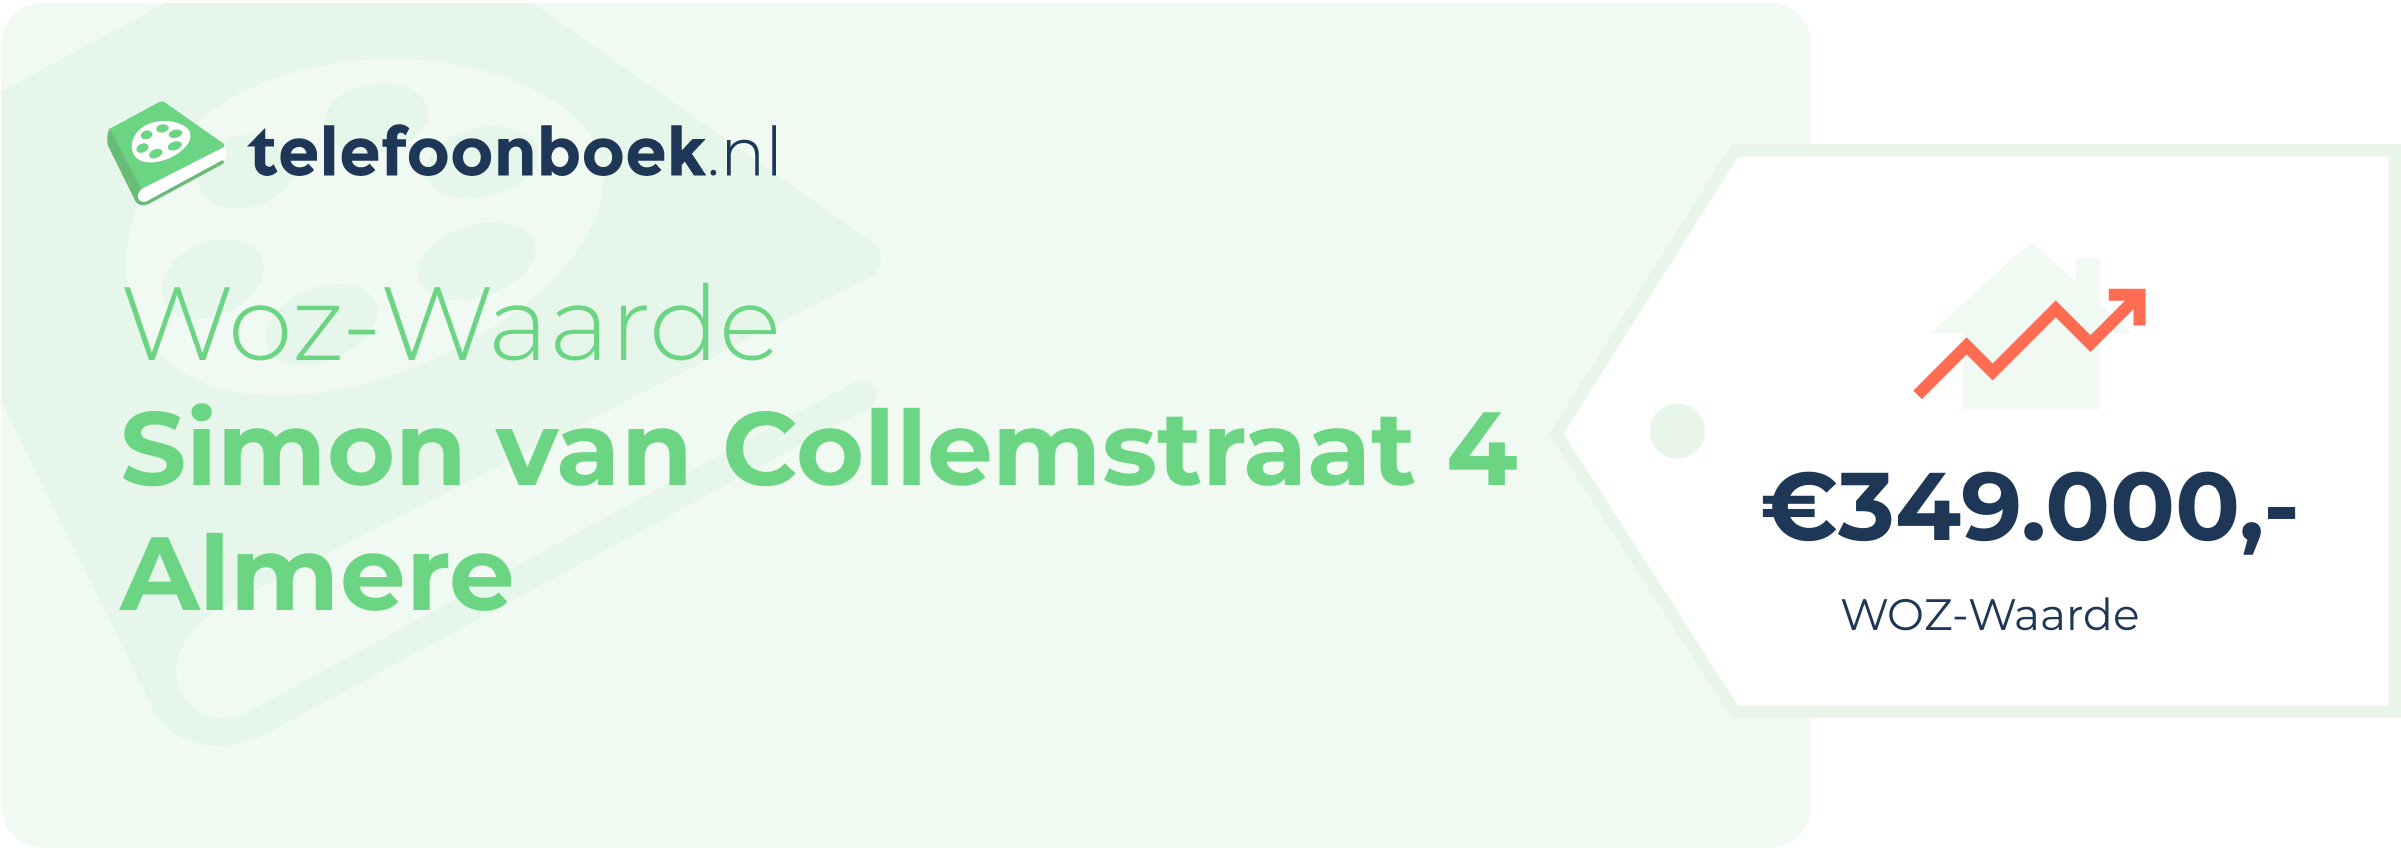 WOZ-waarde Simon Van Collemstraat 4 Almere